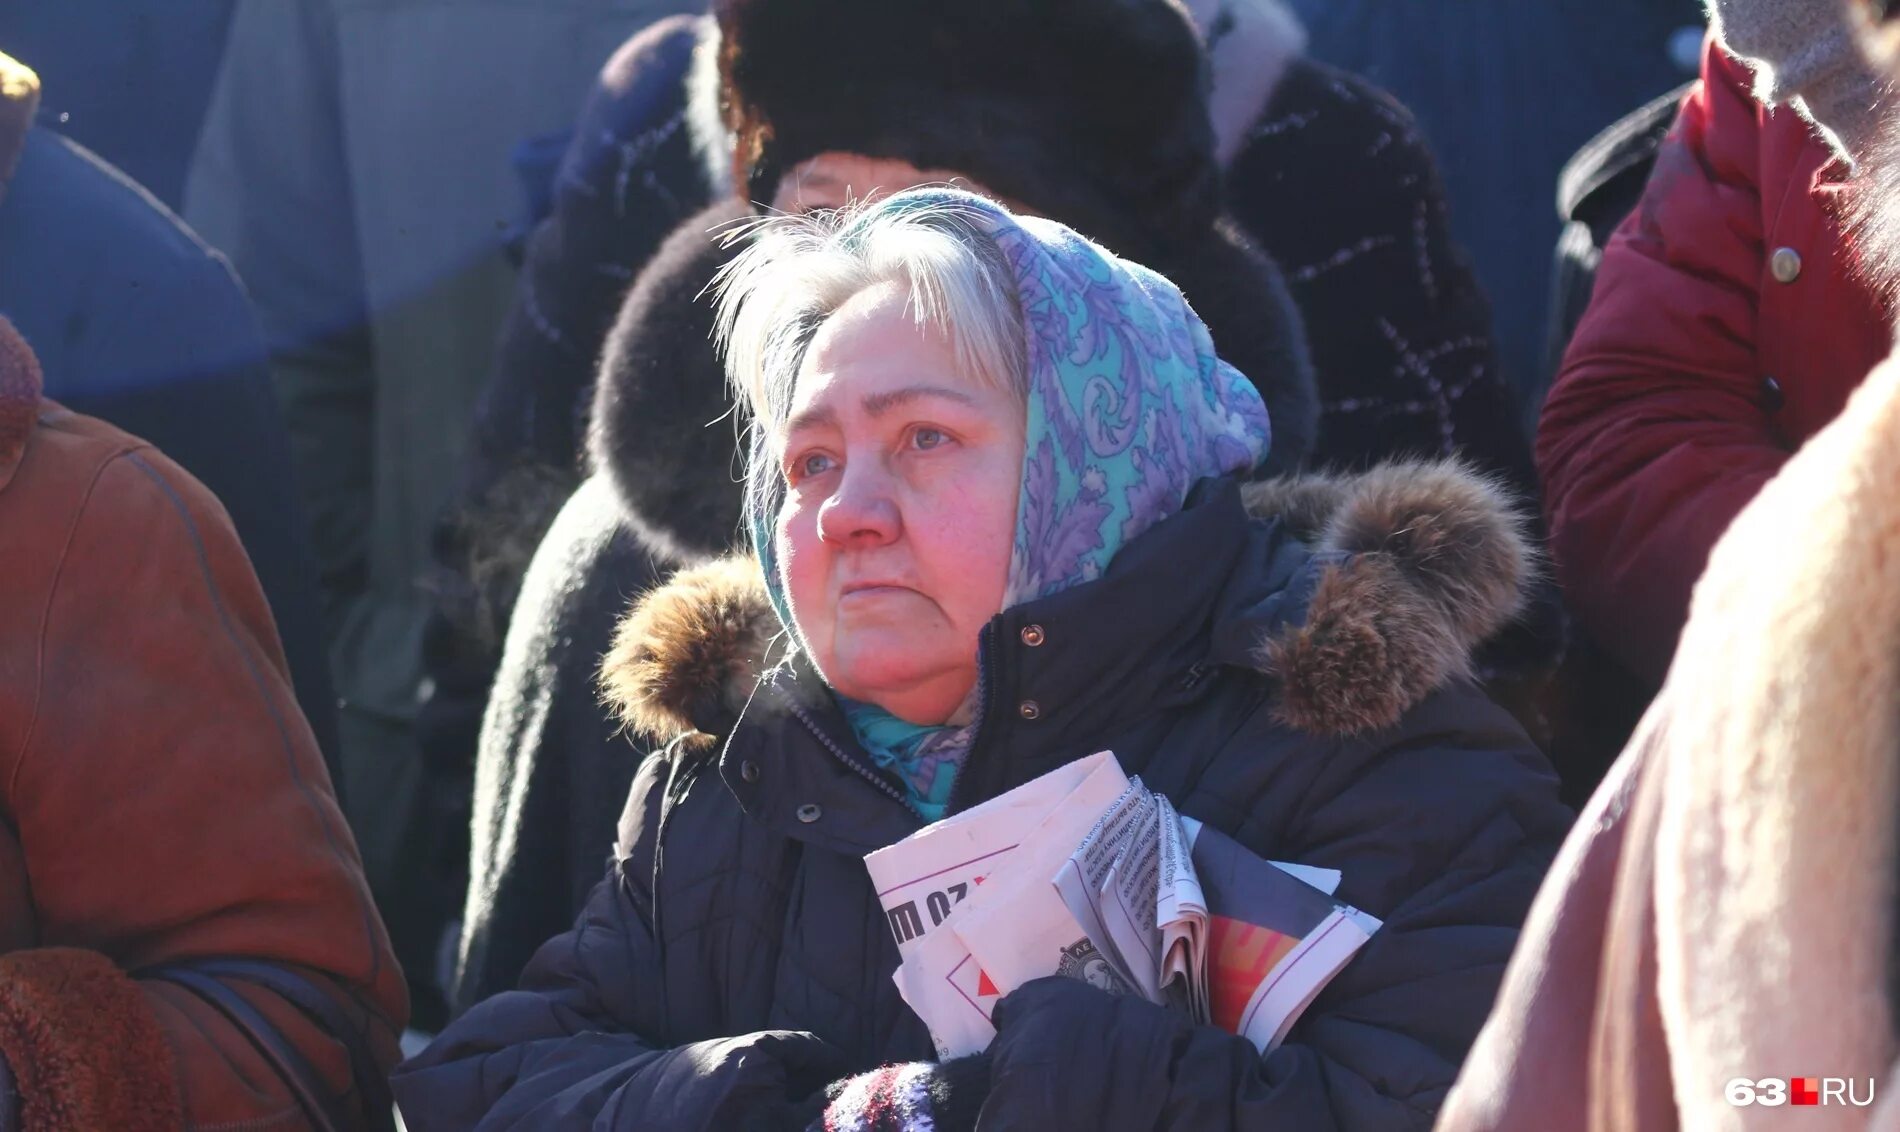 Сегодняшний новости для пенсионеров. Пенсионеры в России. Пенсионеры Самара. События на Украине сегодня последние.